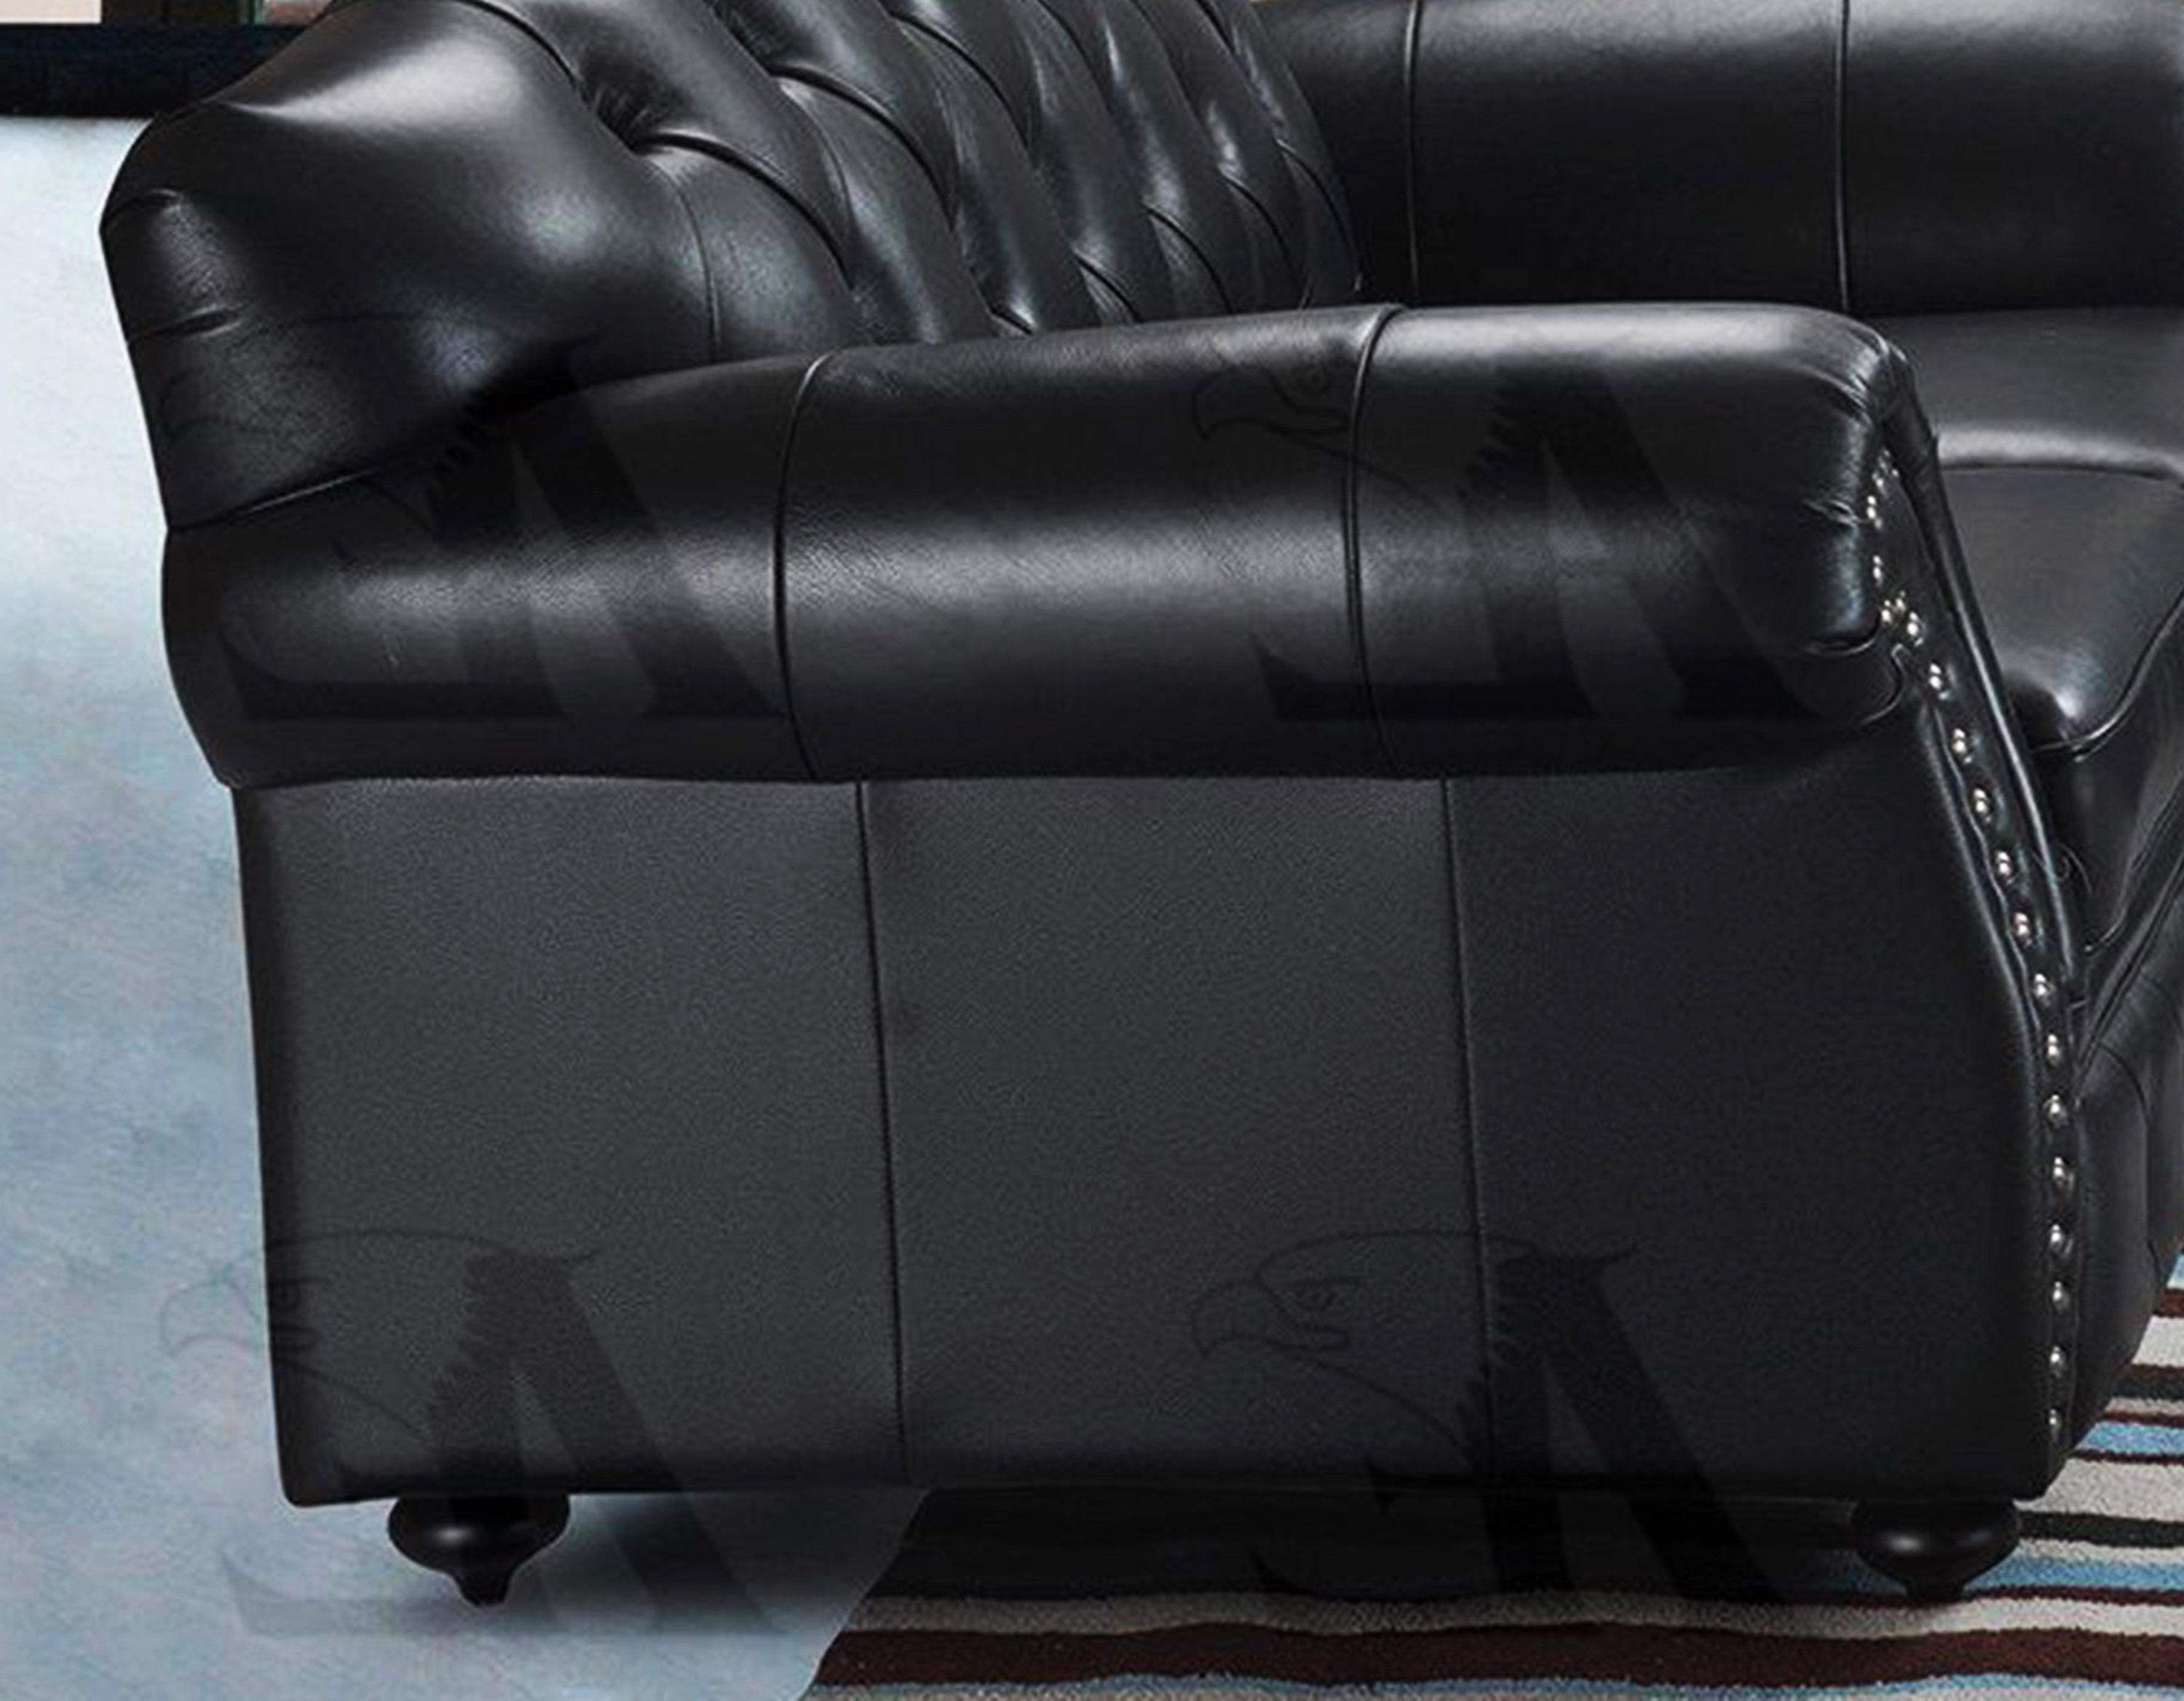 

                    
American Eagle Furniture EK699-BK Sofa Black Italian Leather Purchase 
